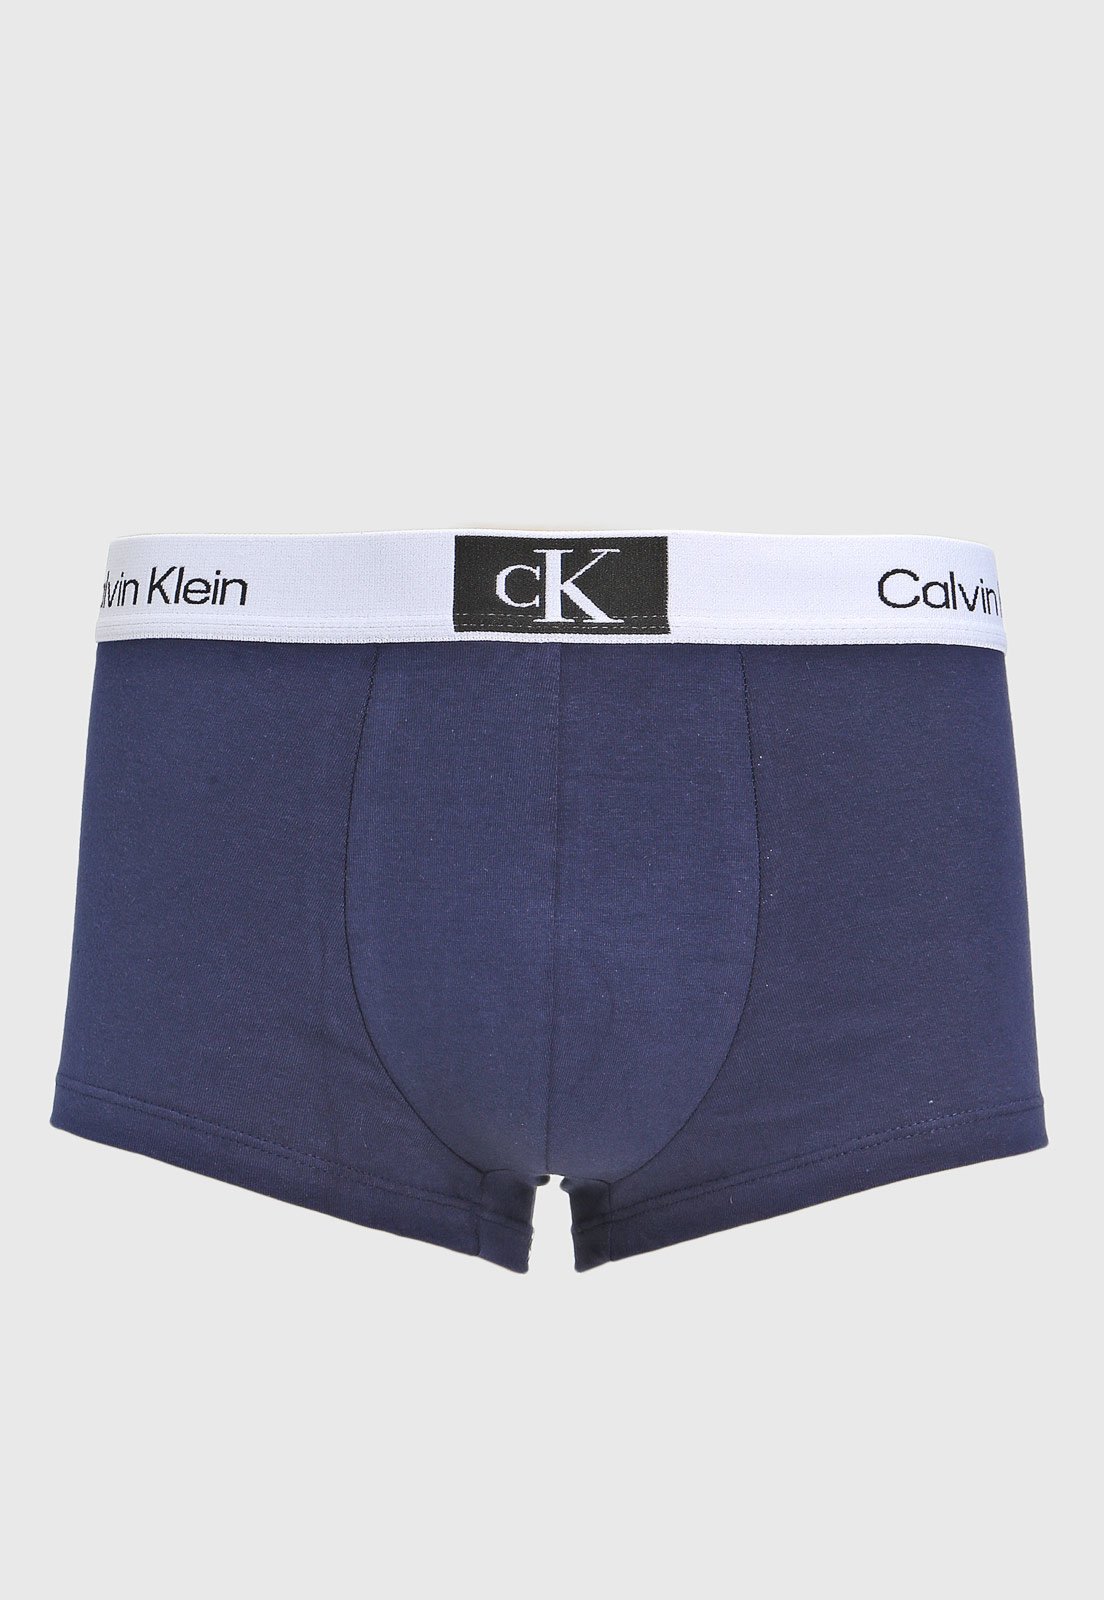 Calvin Klein New CK One White Blue Logo Low Rise Trunk Underwear